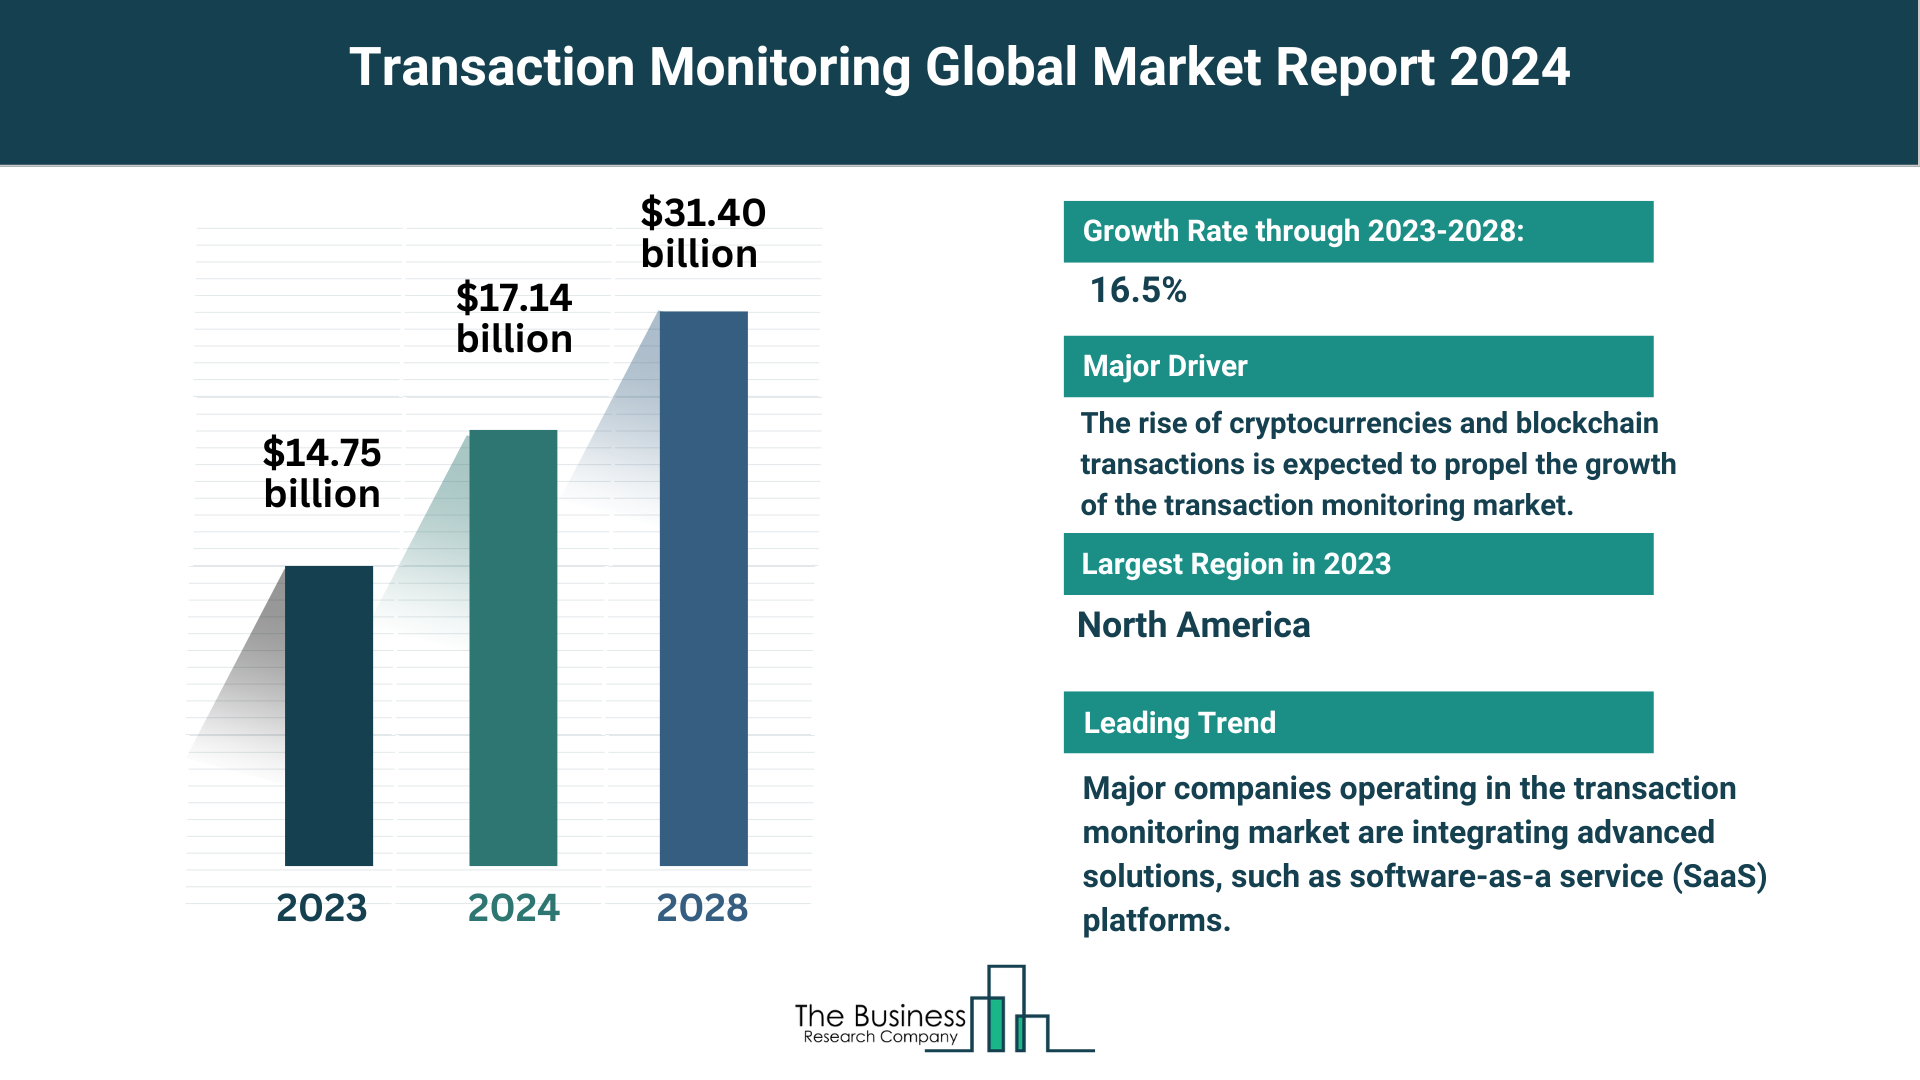 Global Transaction Monitoring Market